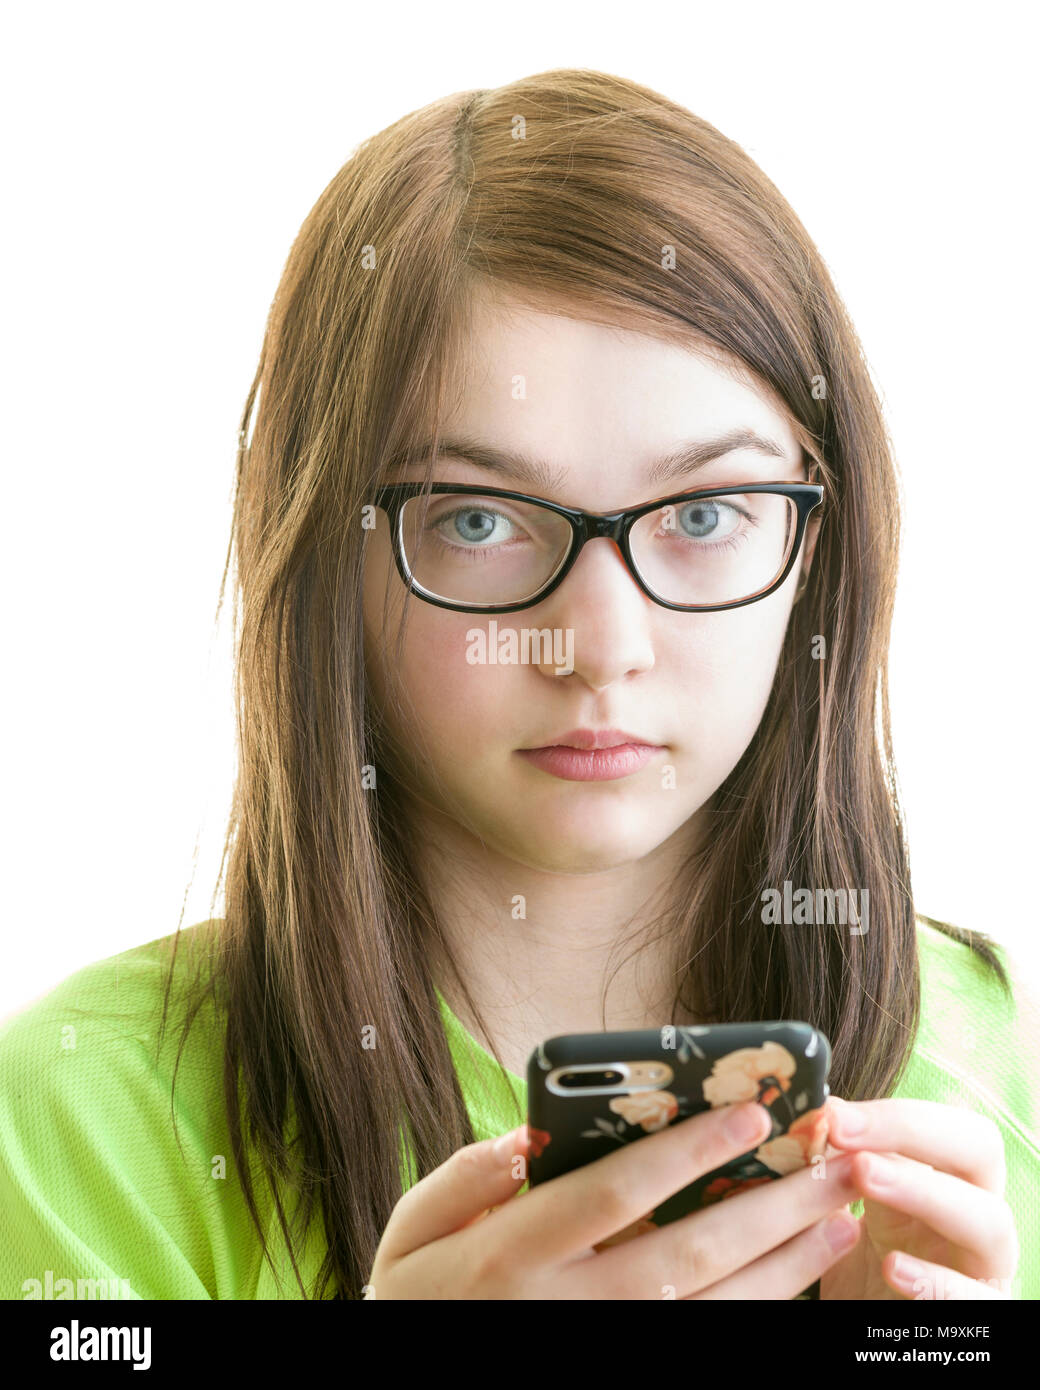 Close up ritratto di una bruna giovani caucasici ragazza adolescente utilizza lo smartphone isolato su uno sfondo bianco modello di rilascio: Sì. Proprietà di rilascio: No. Foto Stock